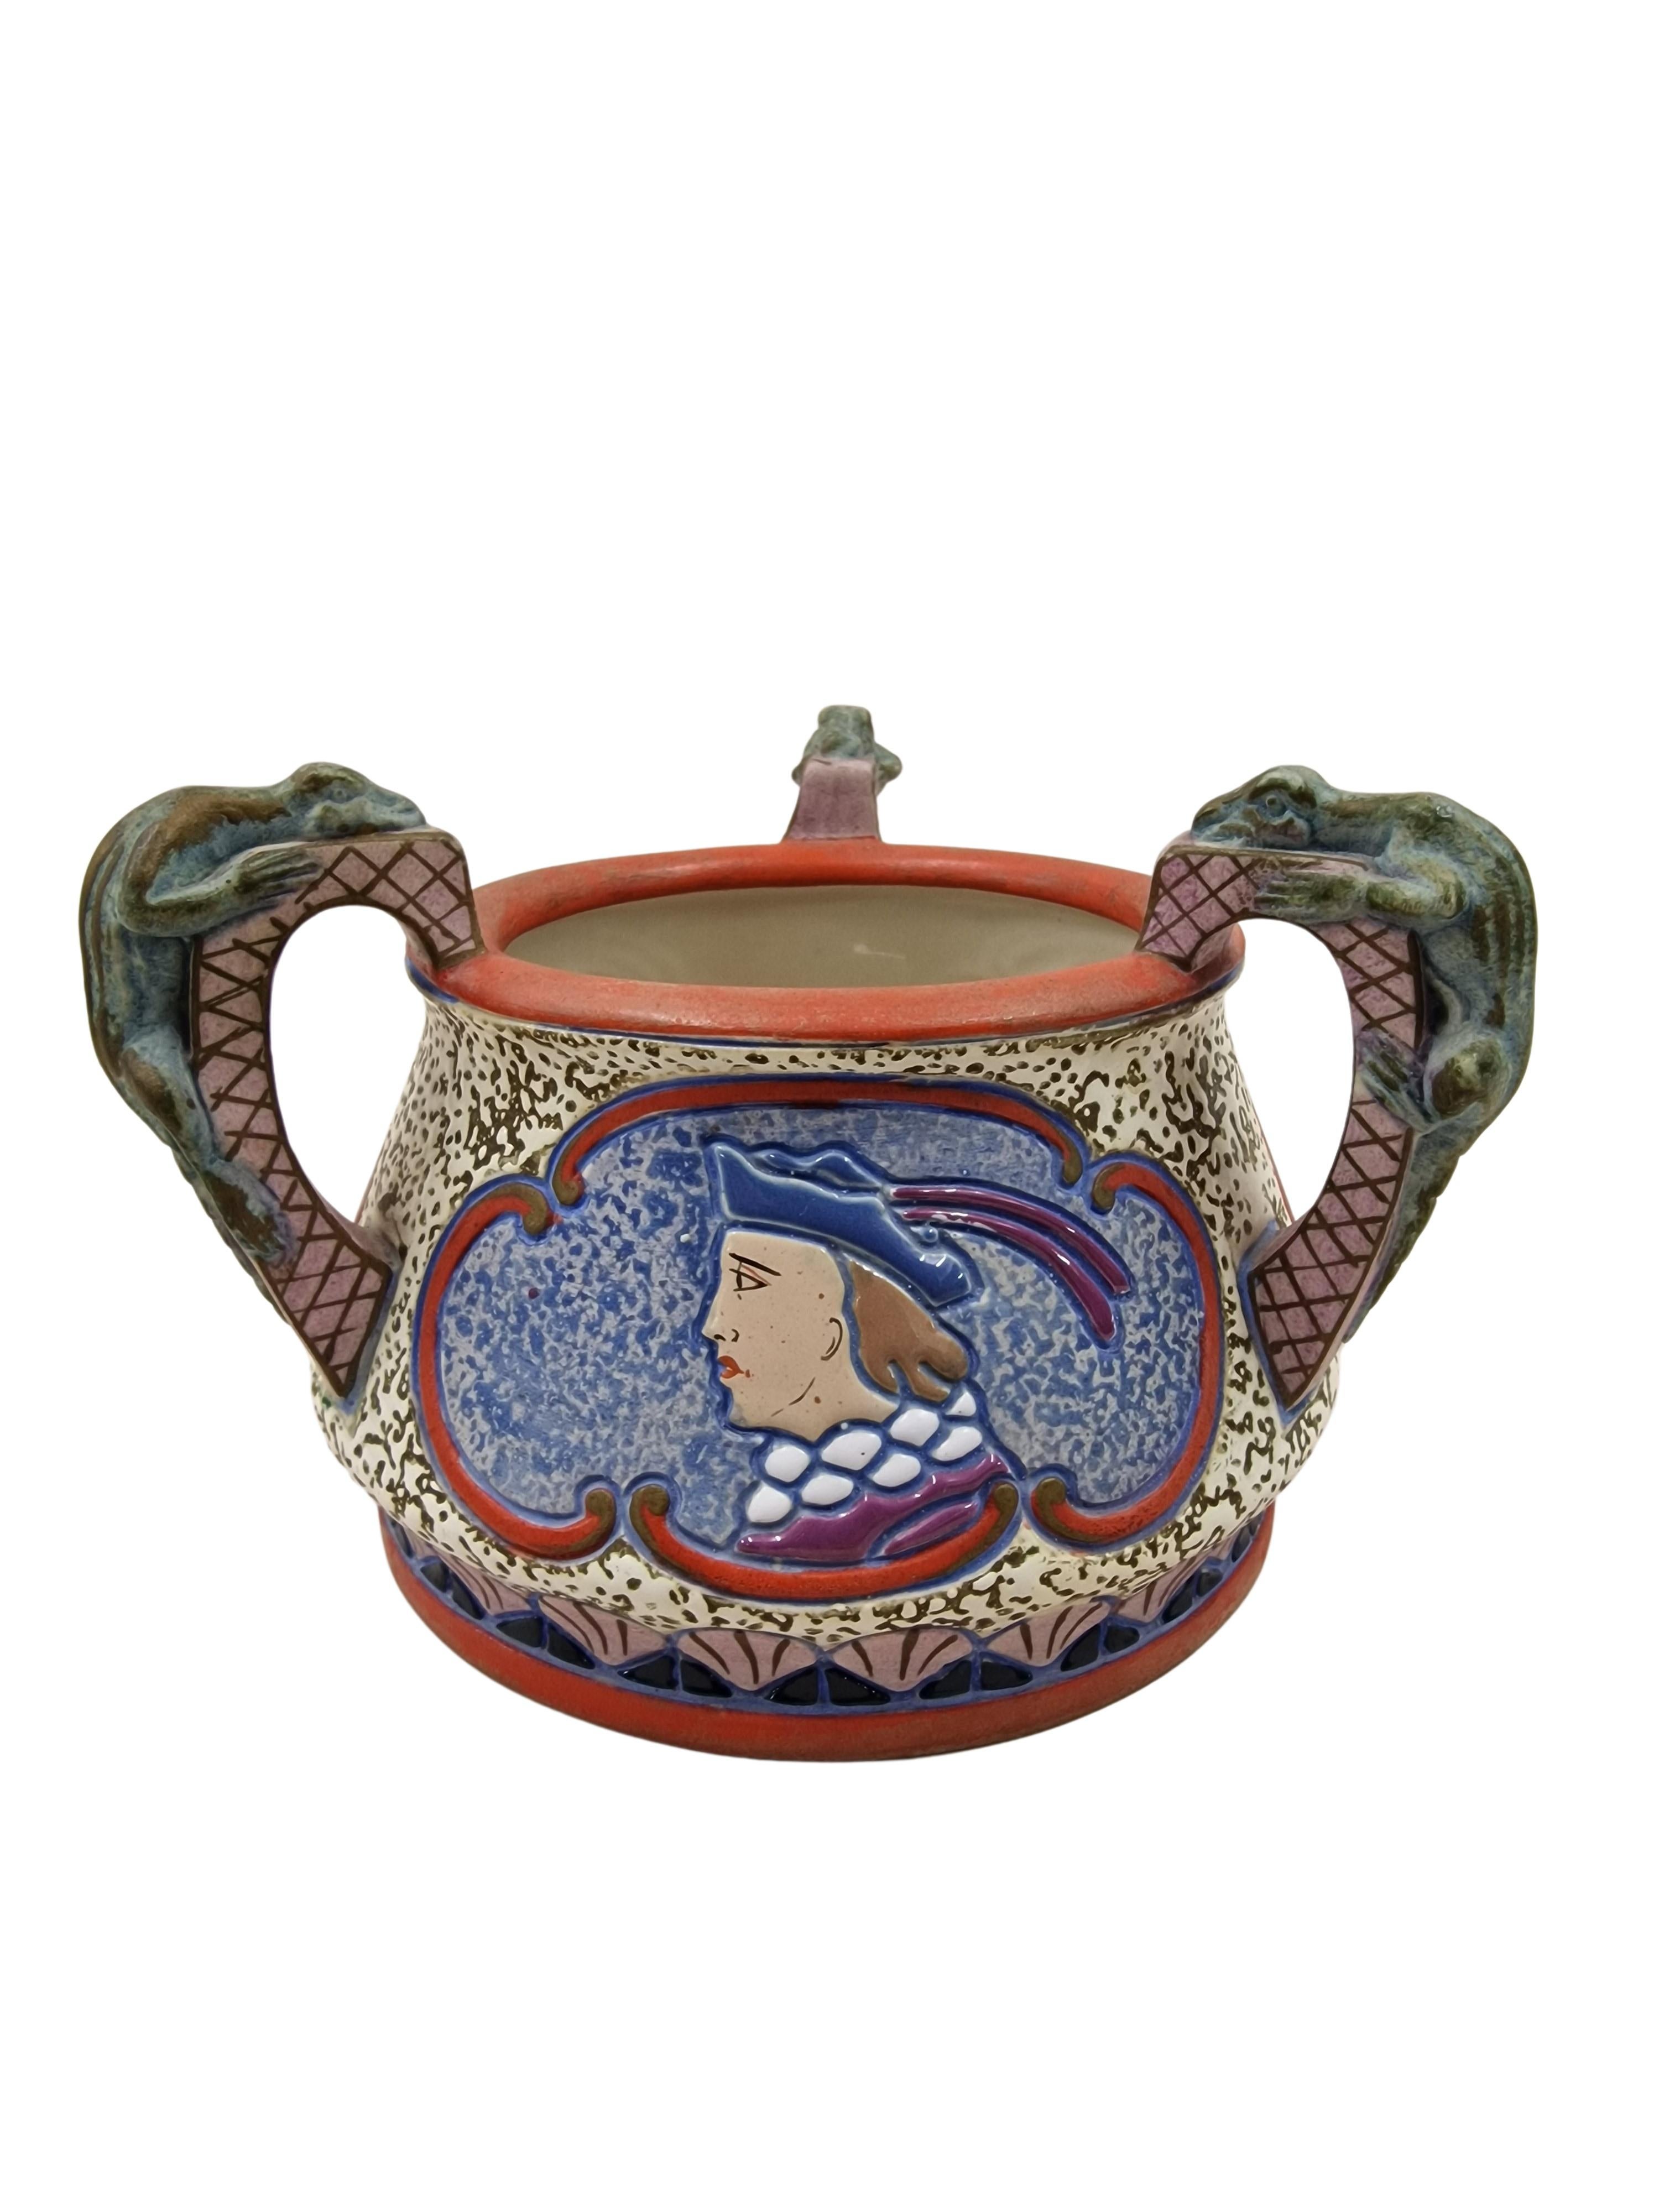 Sehr seltenes literarisches Keramikobjekt der bekannten Firma Amphora aus Bohemia, Tschechische Republik, hergestellt in der Zeit des Art Deco um 1920.

Die drei Musketiere des bekannten Romans von Alexandre Dumas aus dem Jahr 1844 sind in 3